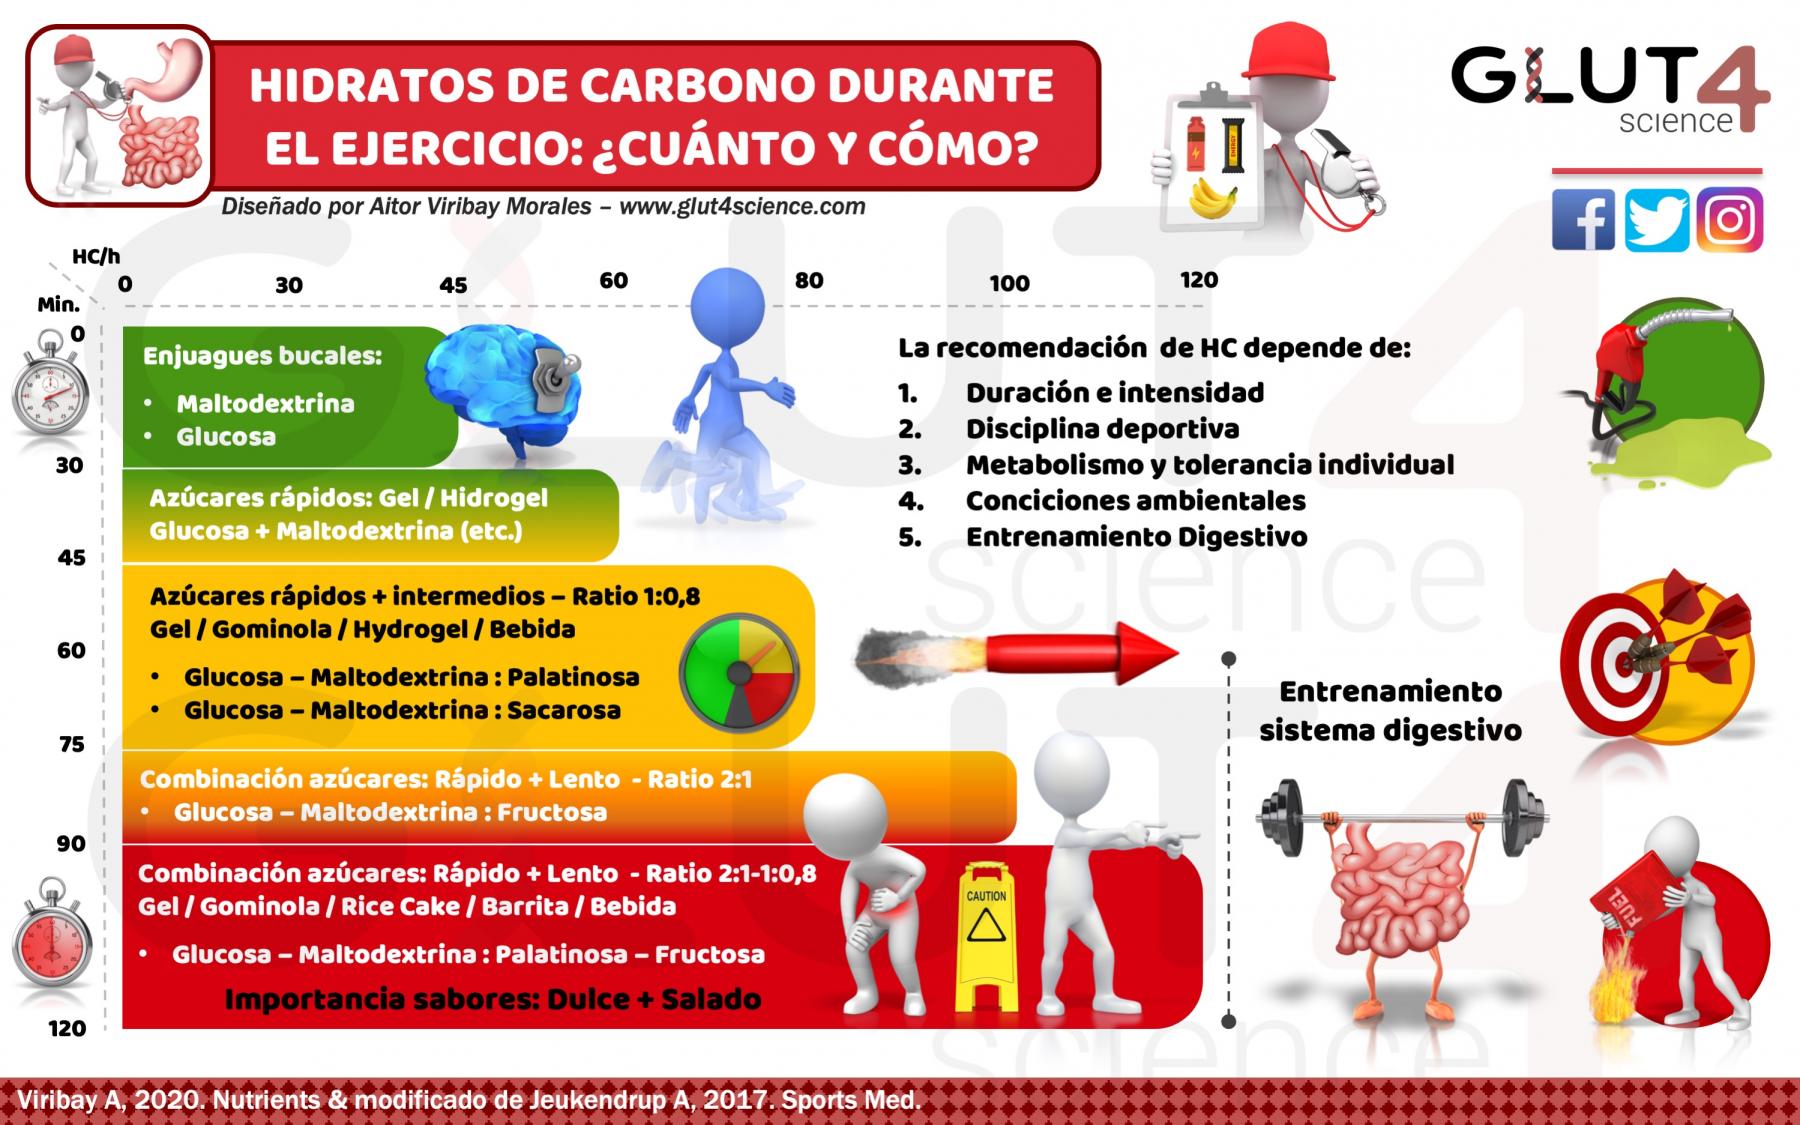 Hidratos de Carbono durante el ejercicio: Recomendaciones